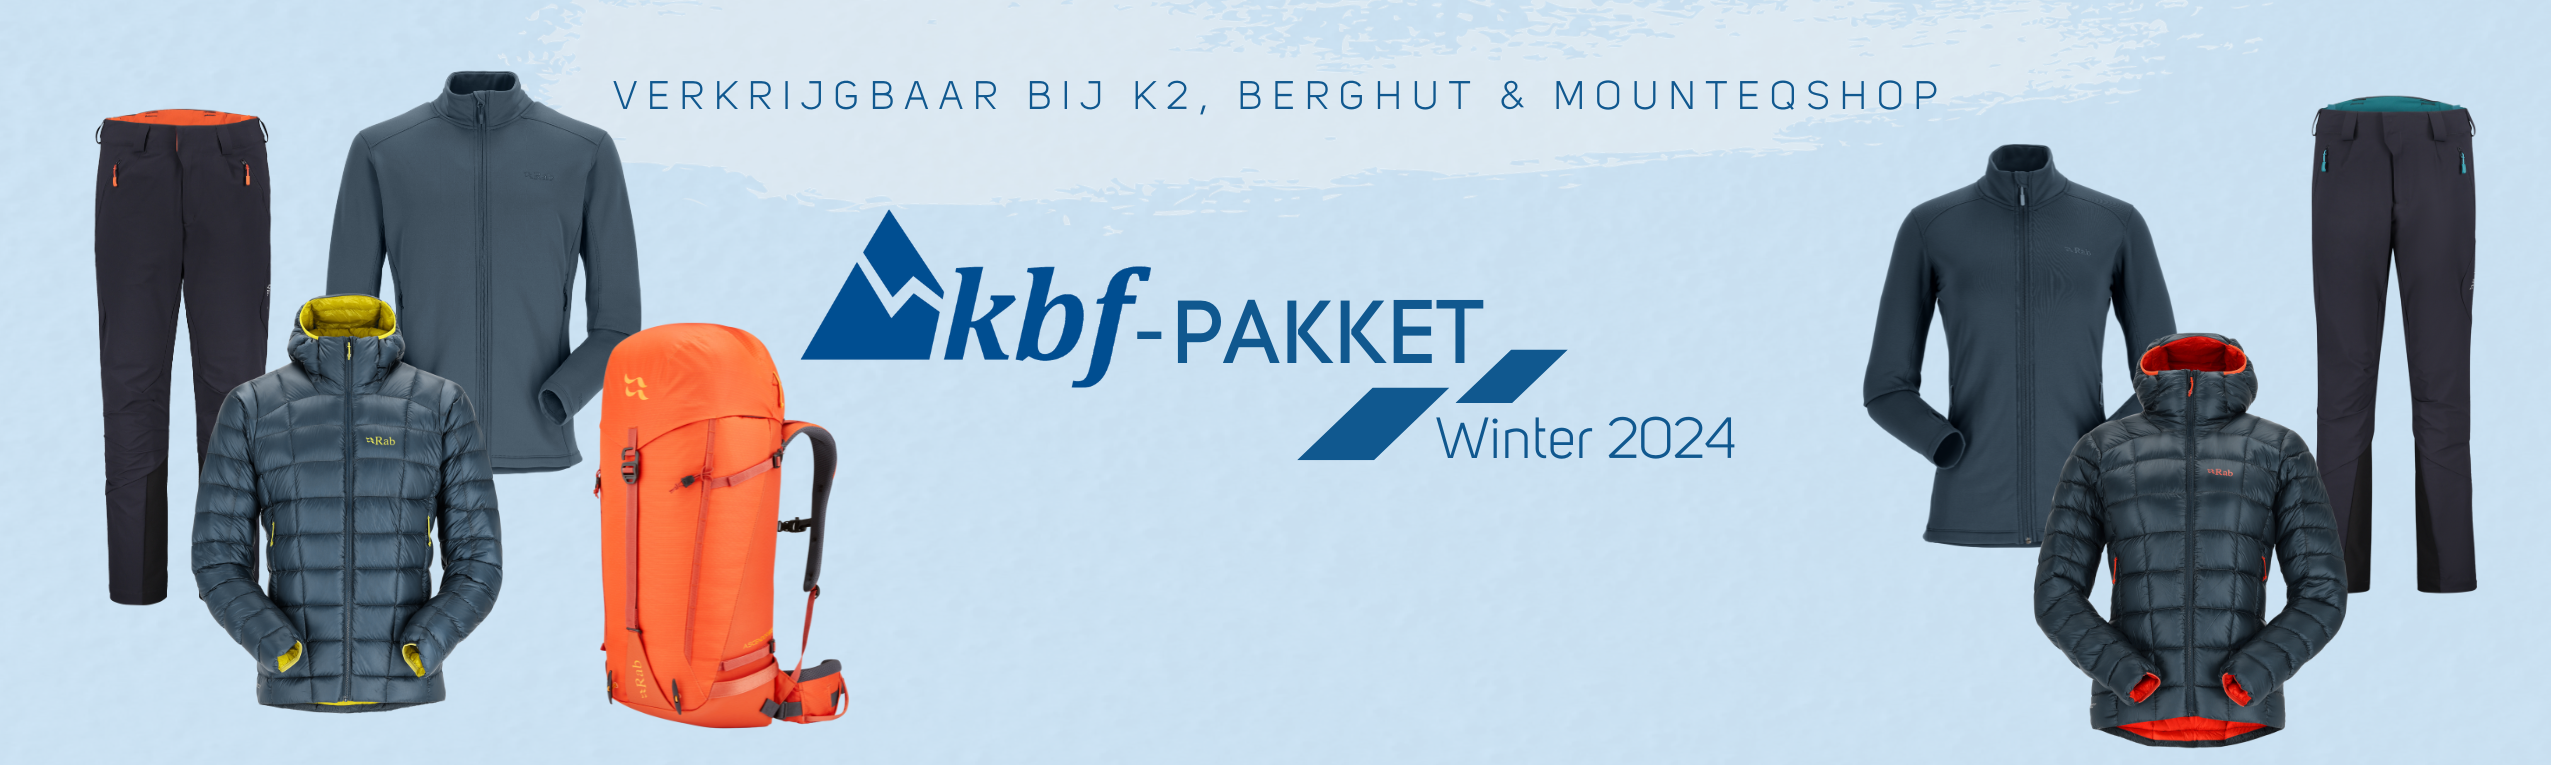 KBF Pakket Winter 2024